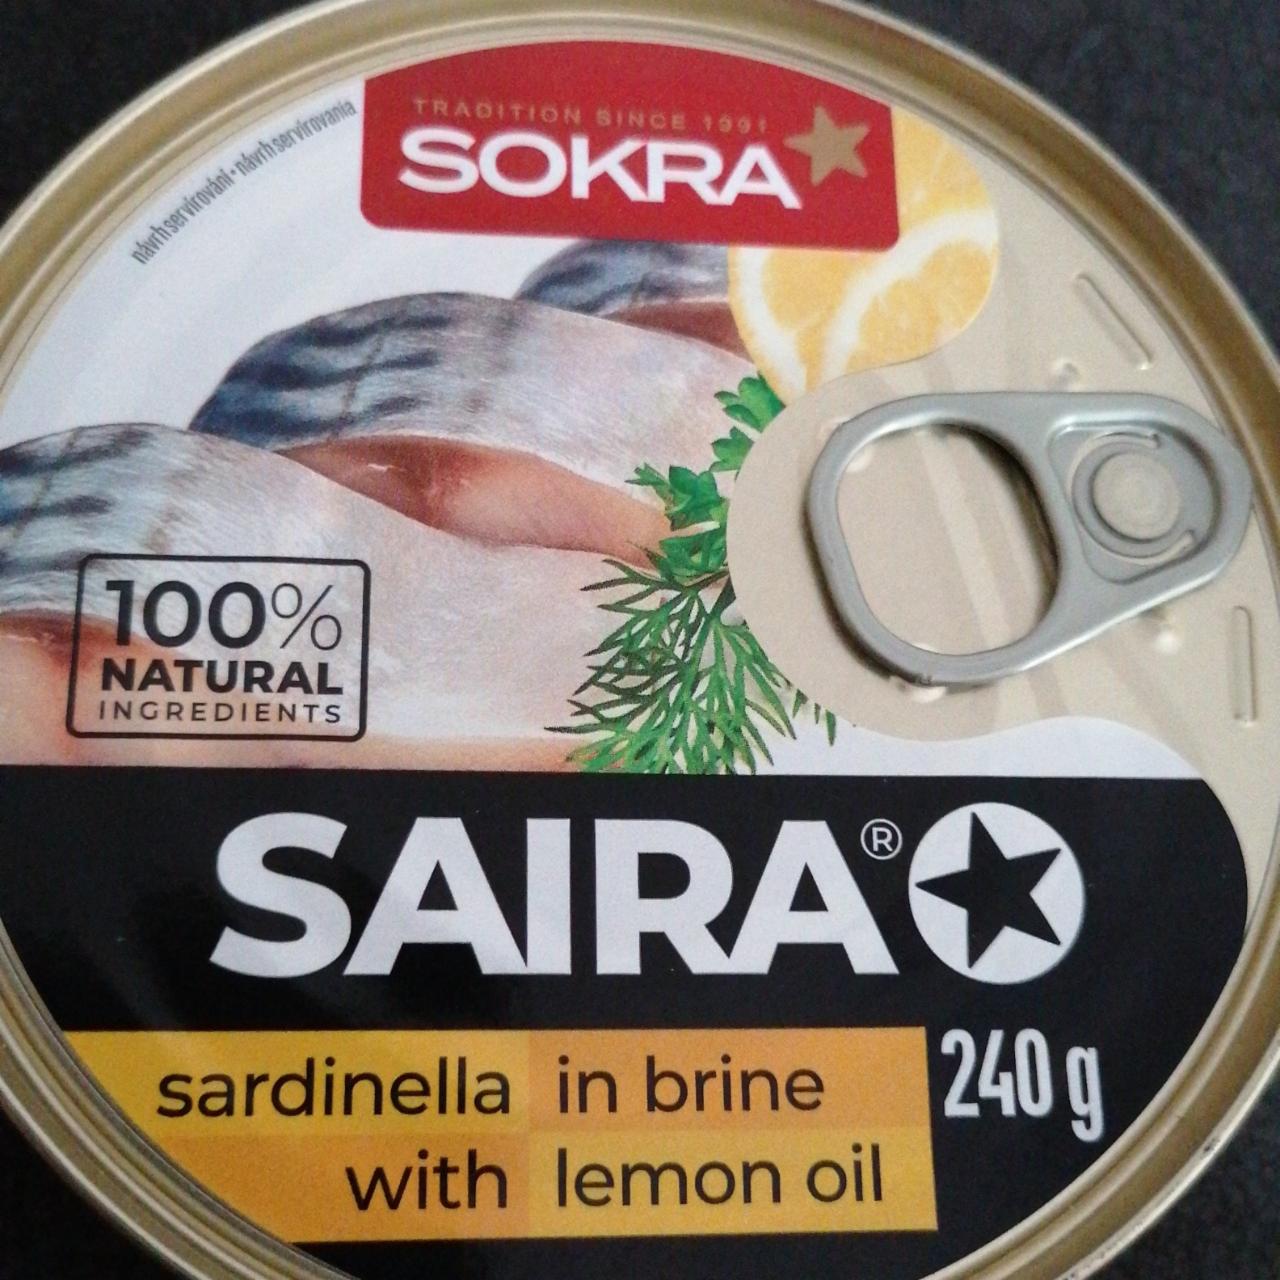 Fotografie - saira sardinella in brine with Lemon oil Sokra